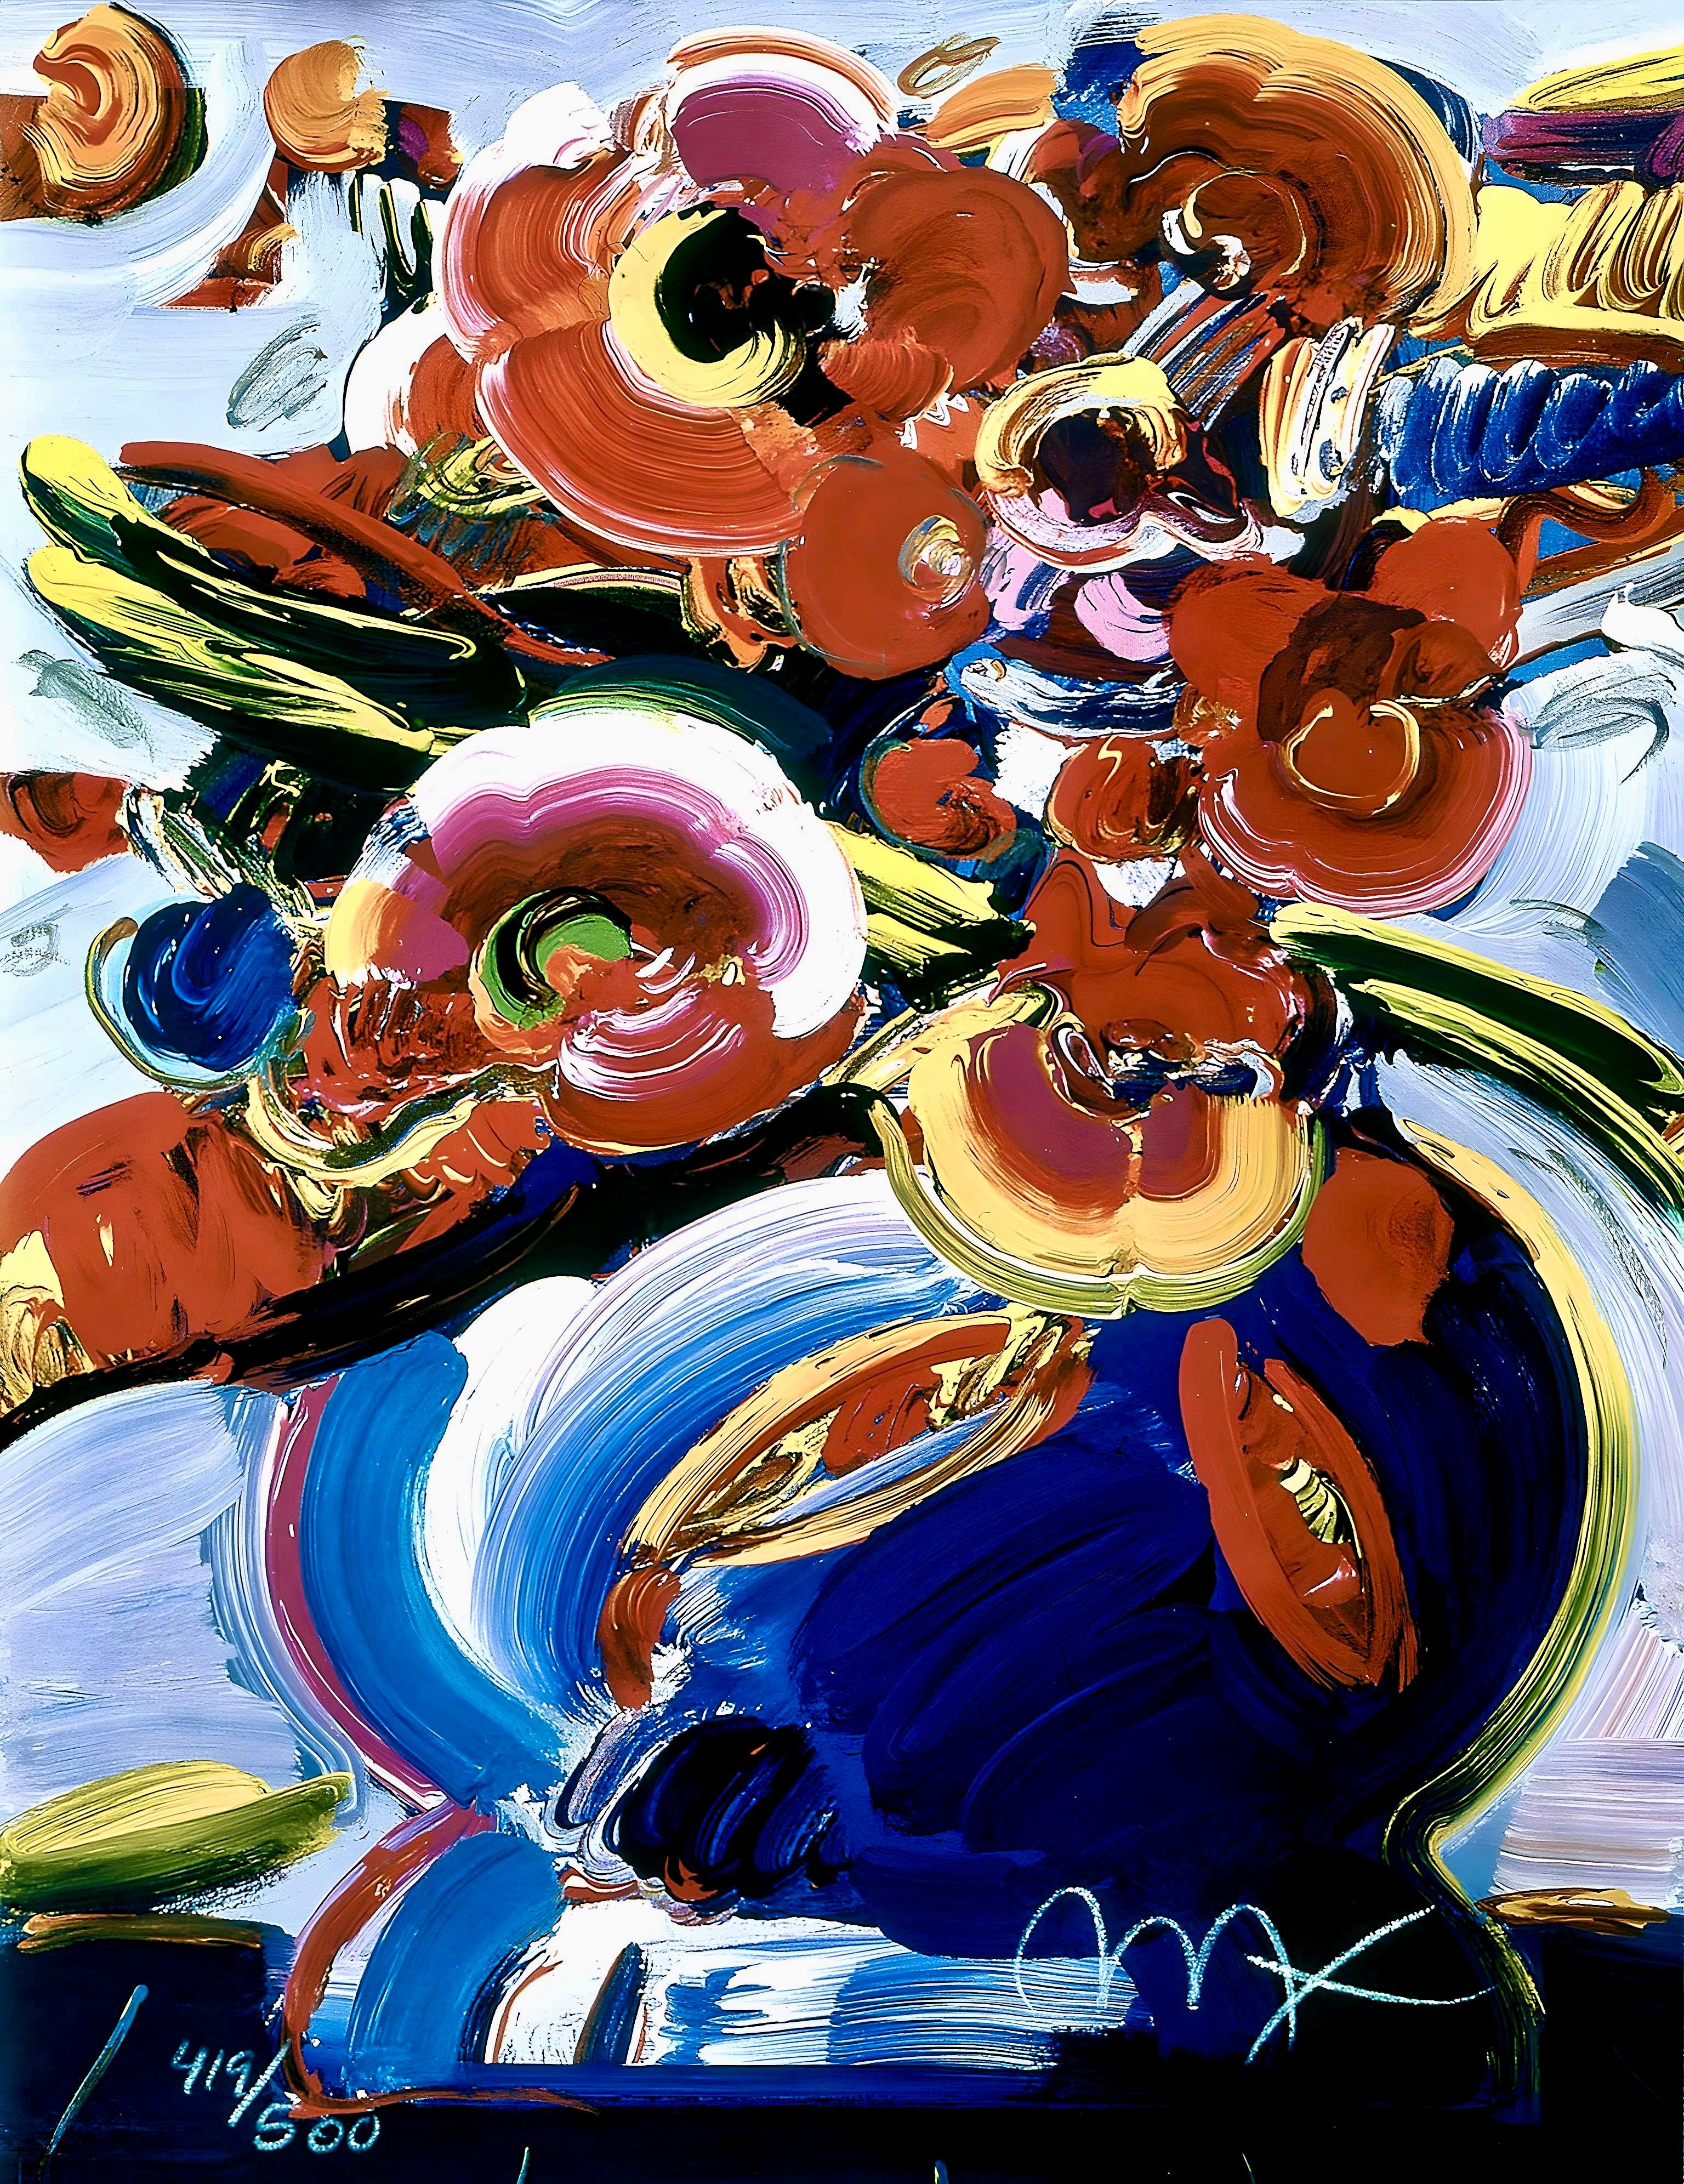 Künstler: Peter Max (1937)
Titel: Blumen in blauer Vase III
Jahr: 2000
Auflage: 419/500, plus Probedrucke
Medium: Lithographie auf Archivierungspapier
Größe: 12 x 9 Zoll
Zustand: Ausgezeichnet
Beschriftung: Signiert und nummeriert vom